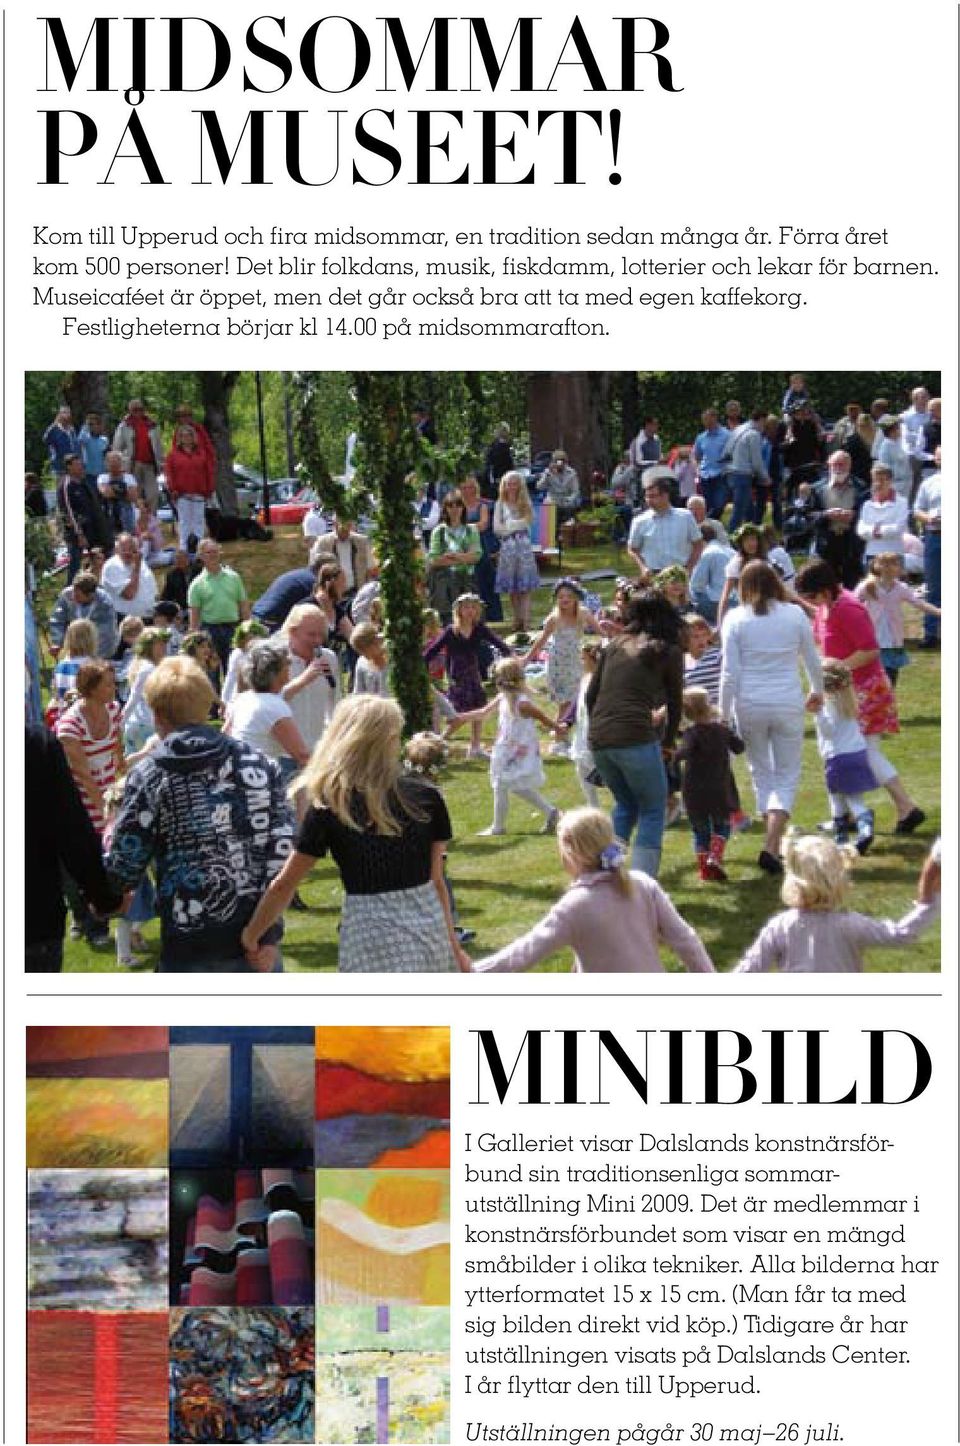 00 på midsommarafton. MINIBILD I Galleriet visar Dalslands konstnärsförbund sin traditionsenliga sommarutställning Mini 2009.